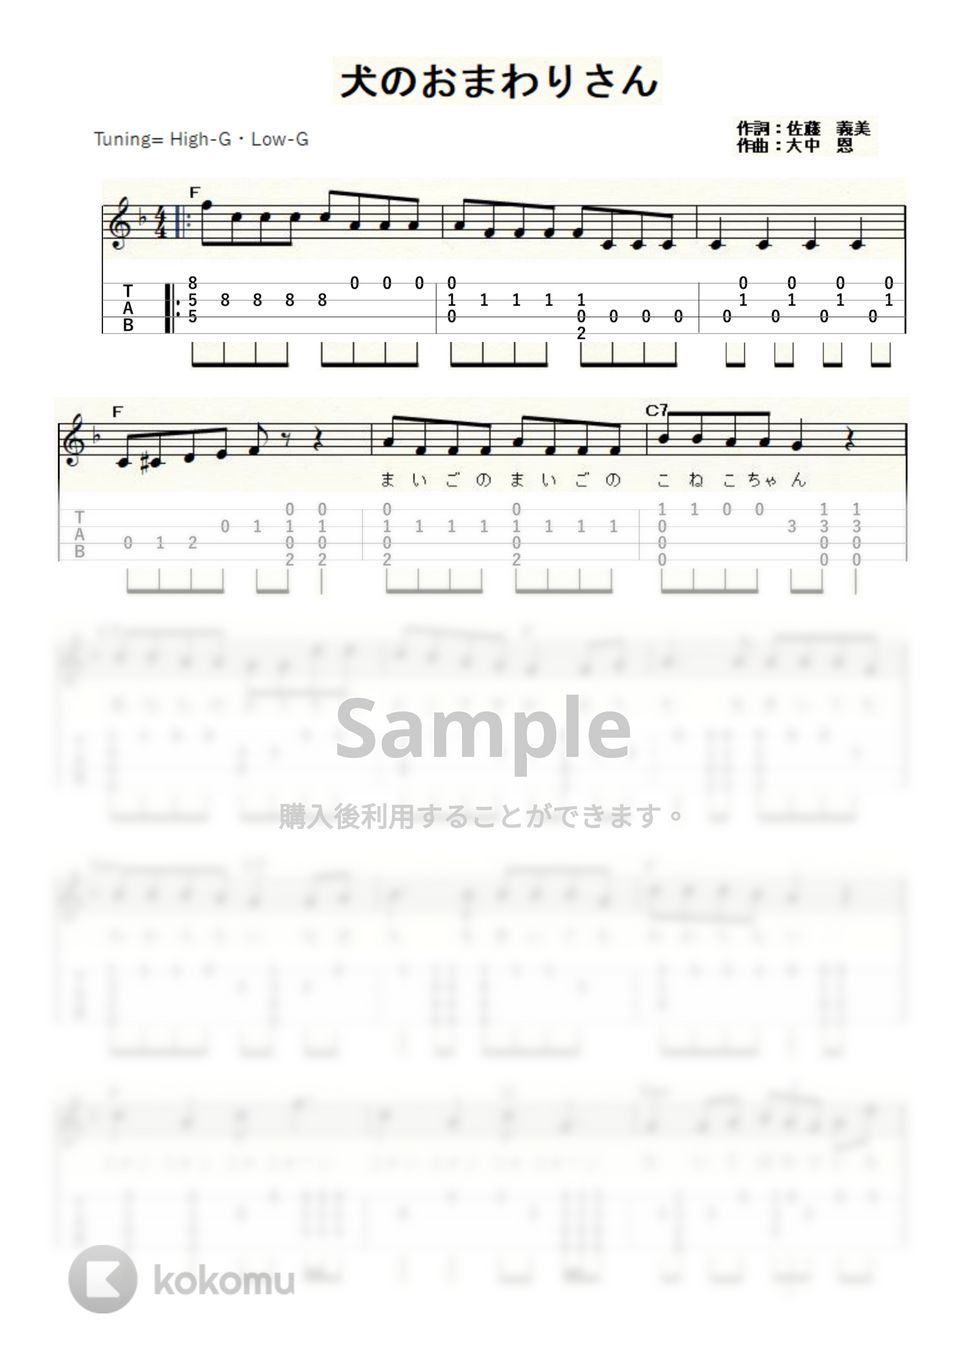 犬のおまわりさん (ｳｸﾚﾚｿﾛ / High-G,Low-G / 中級) by ukulelepapa